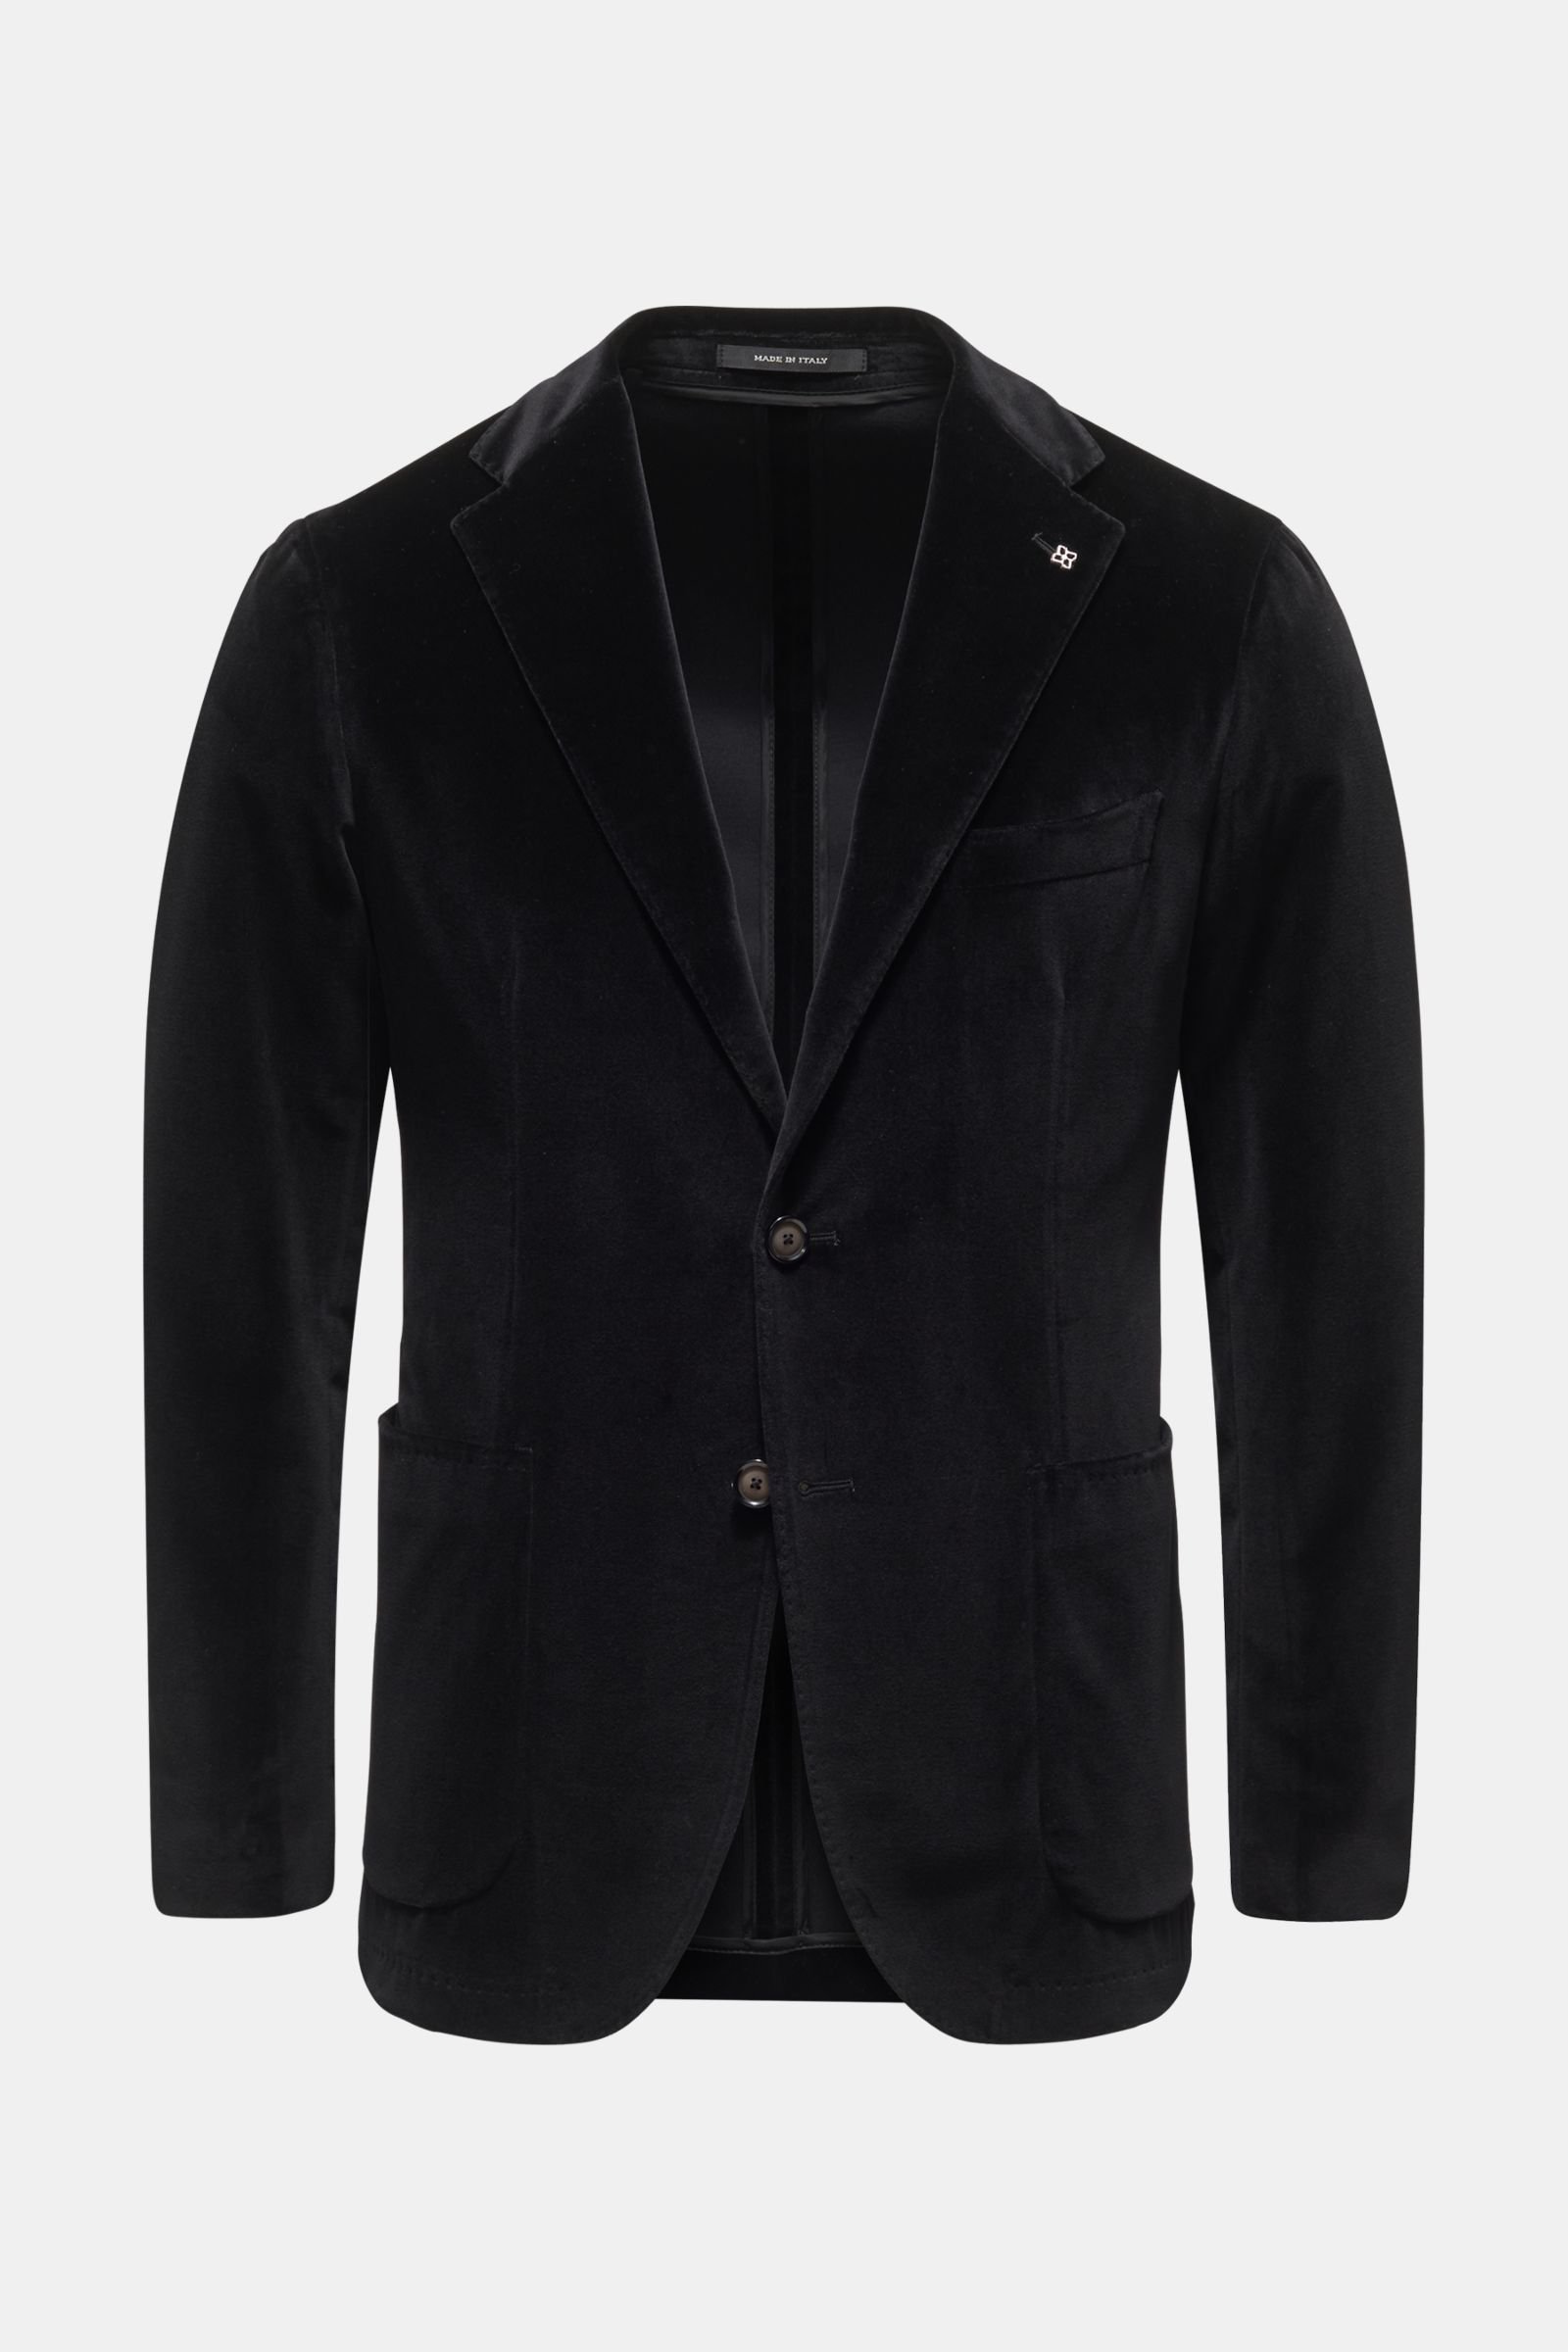 Velvet jacket black